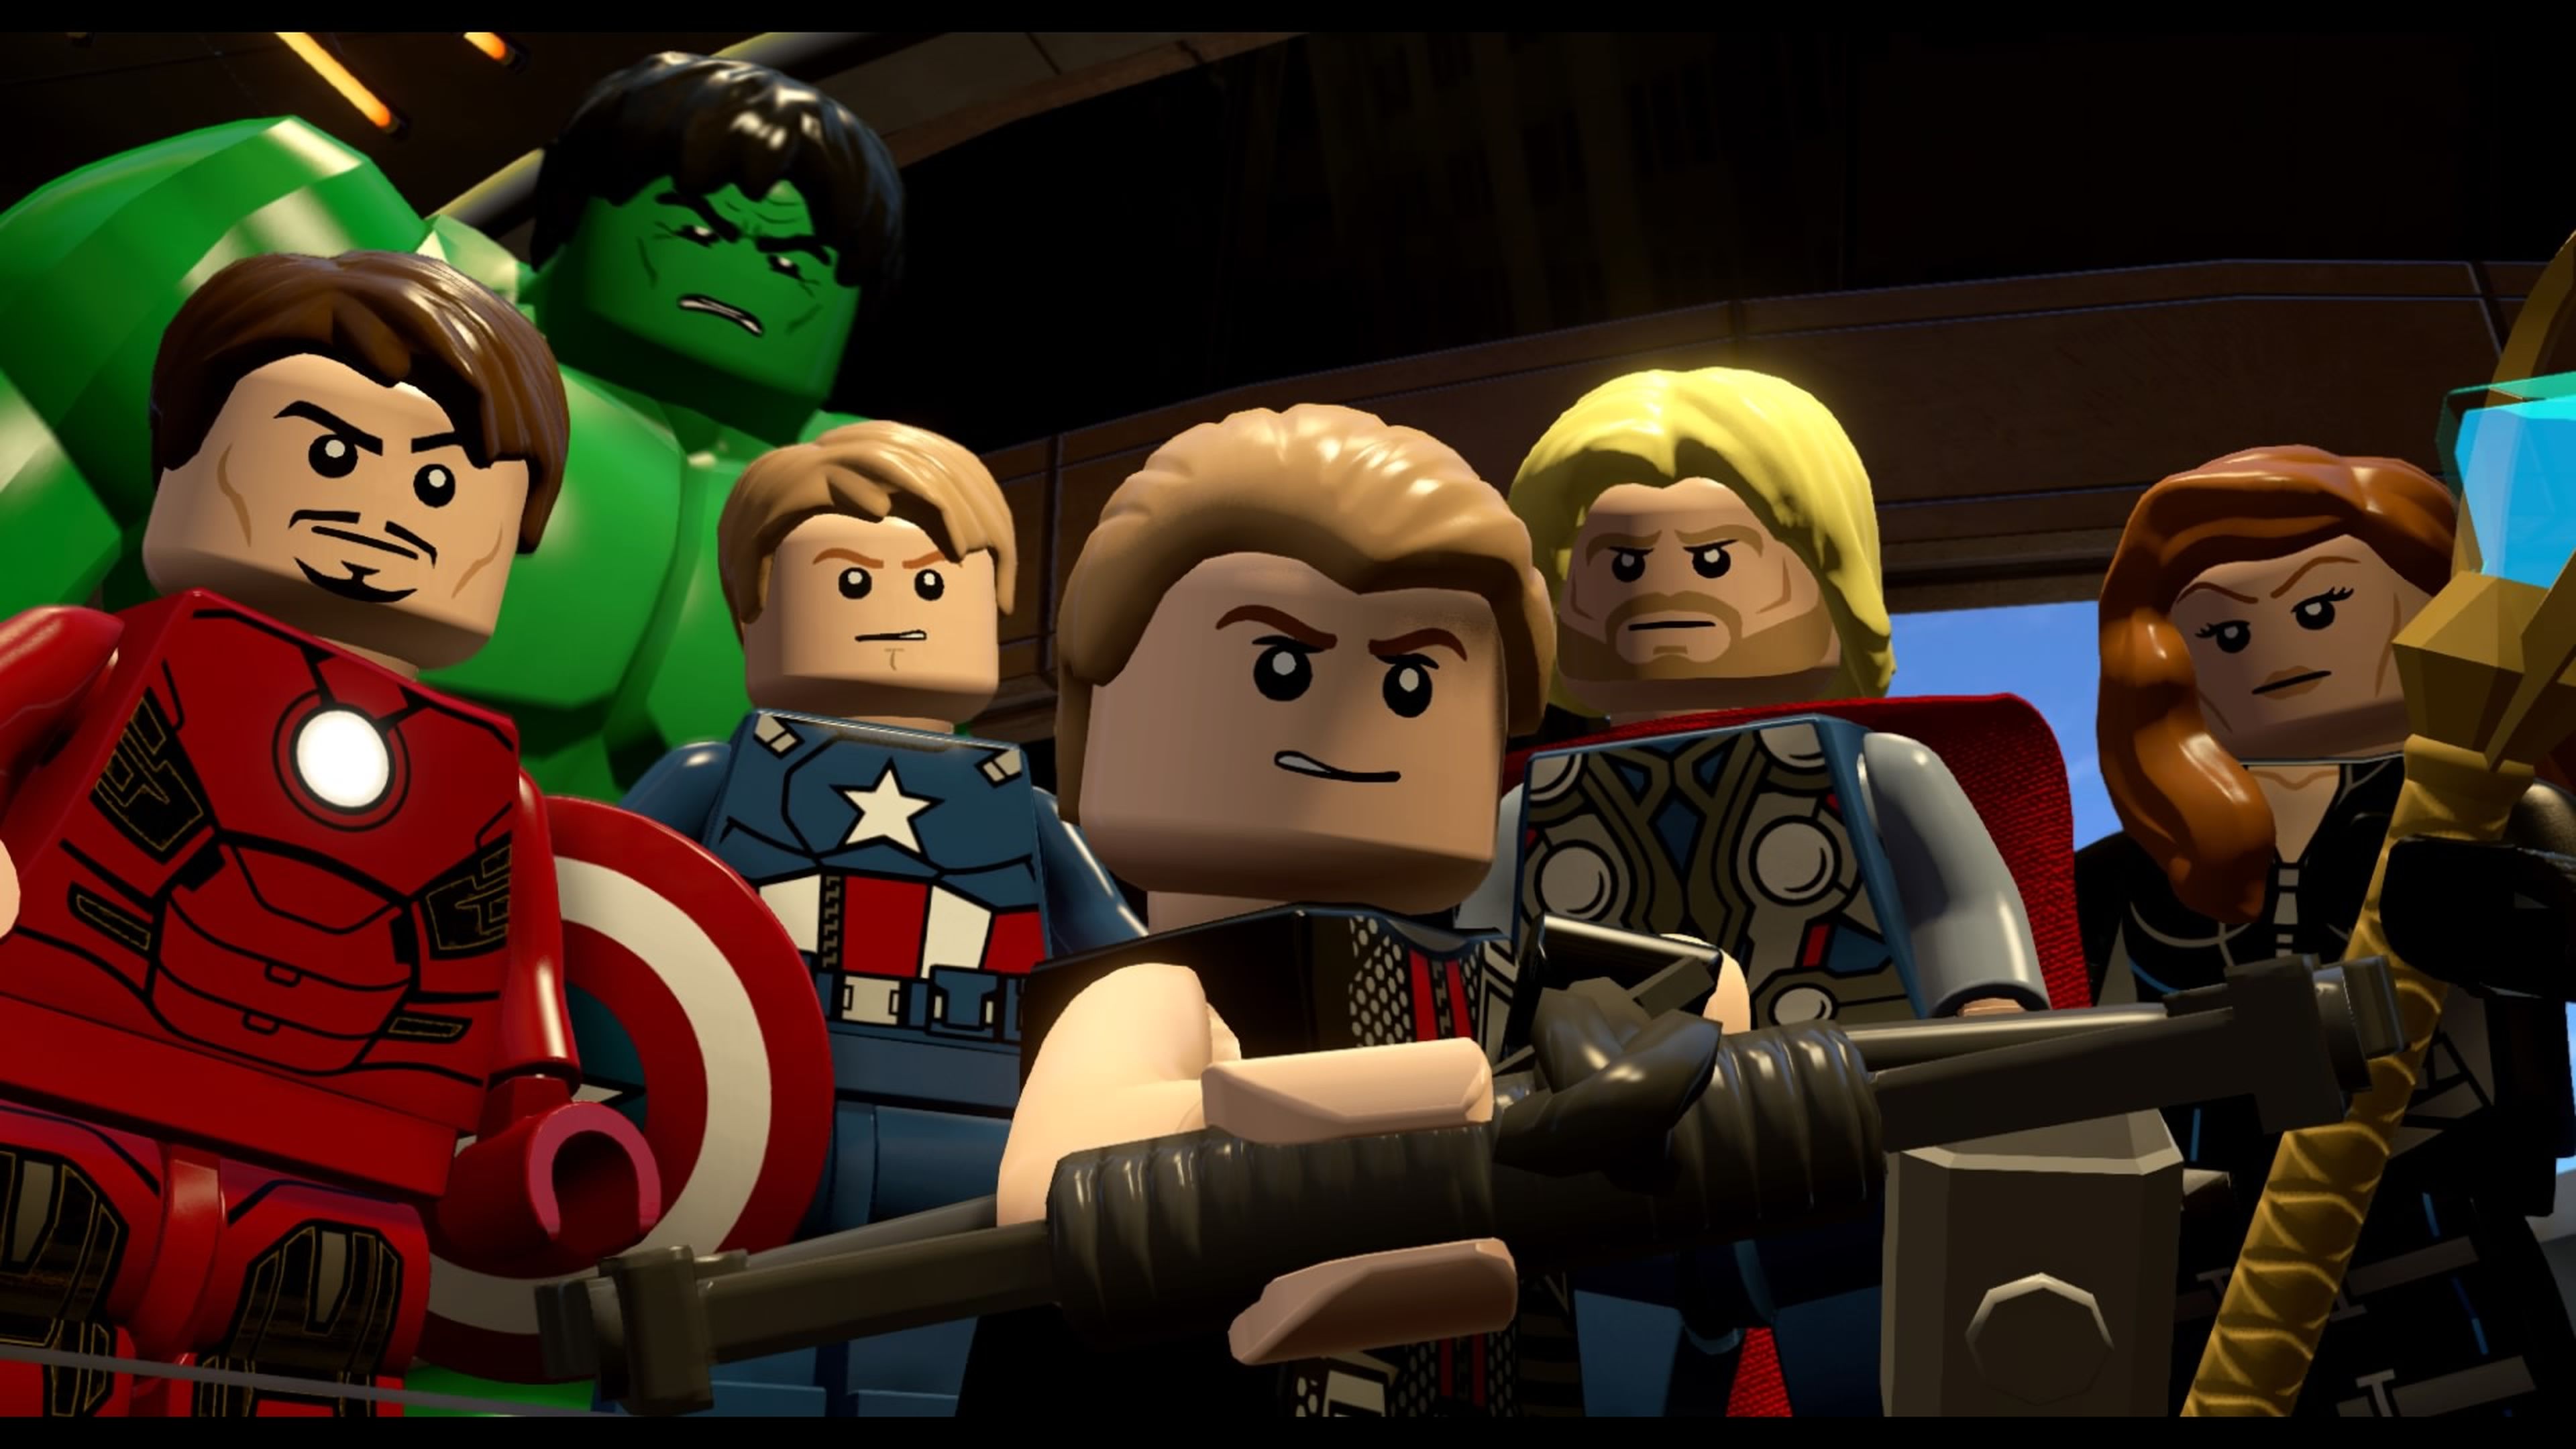 Lego Marvel Super Heroes: códigos e dicas! - Jogos Palpite Digital